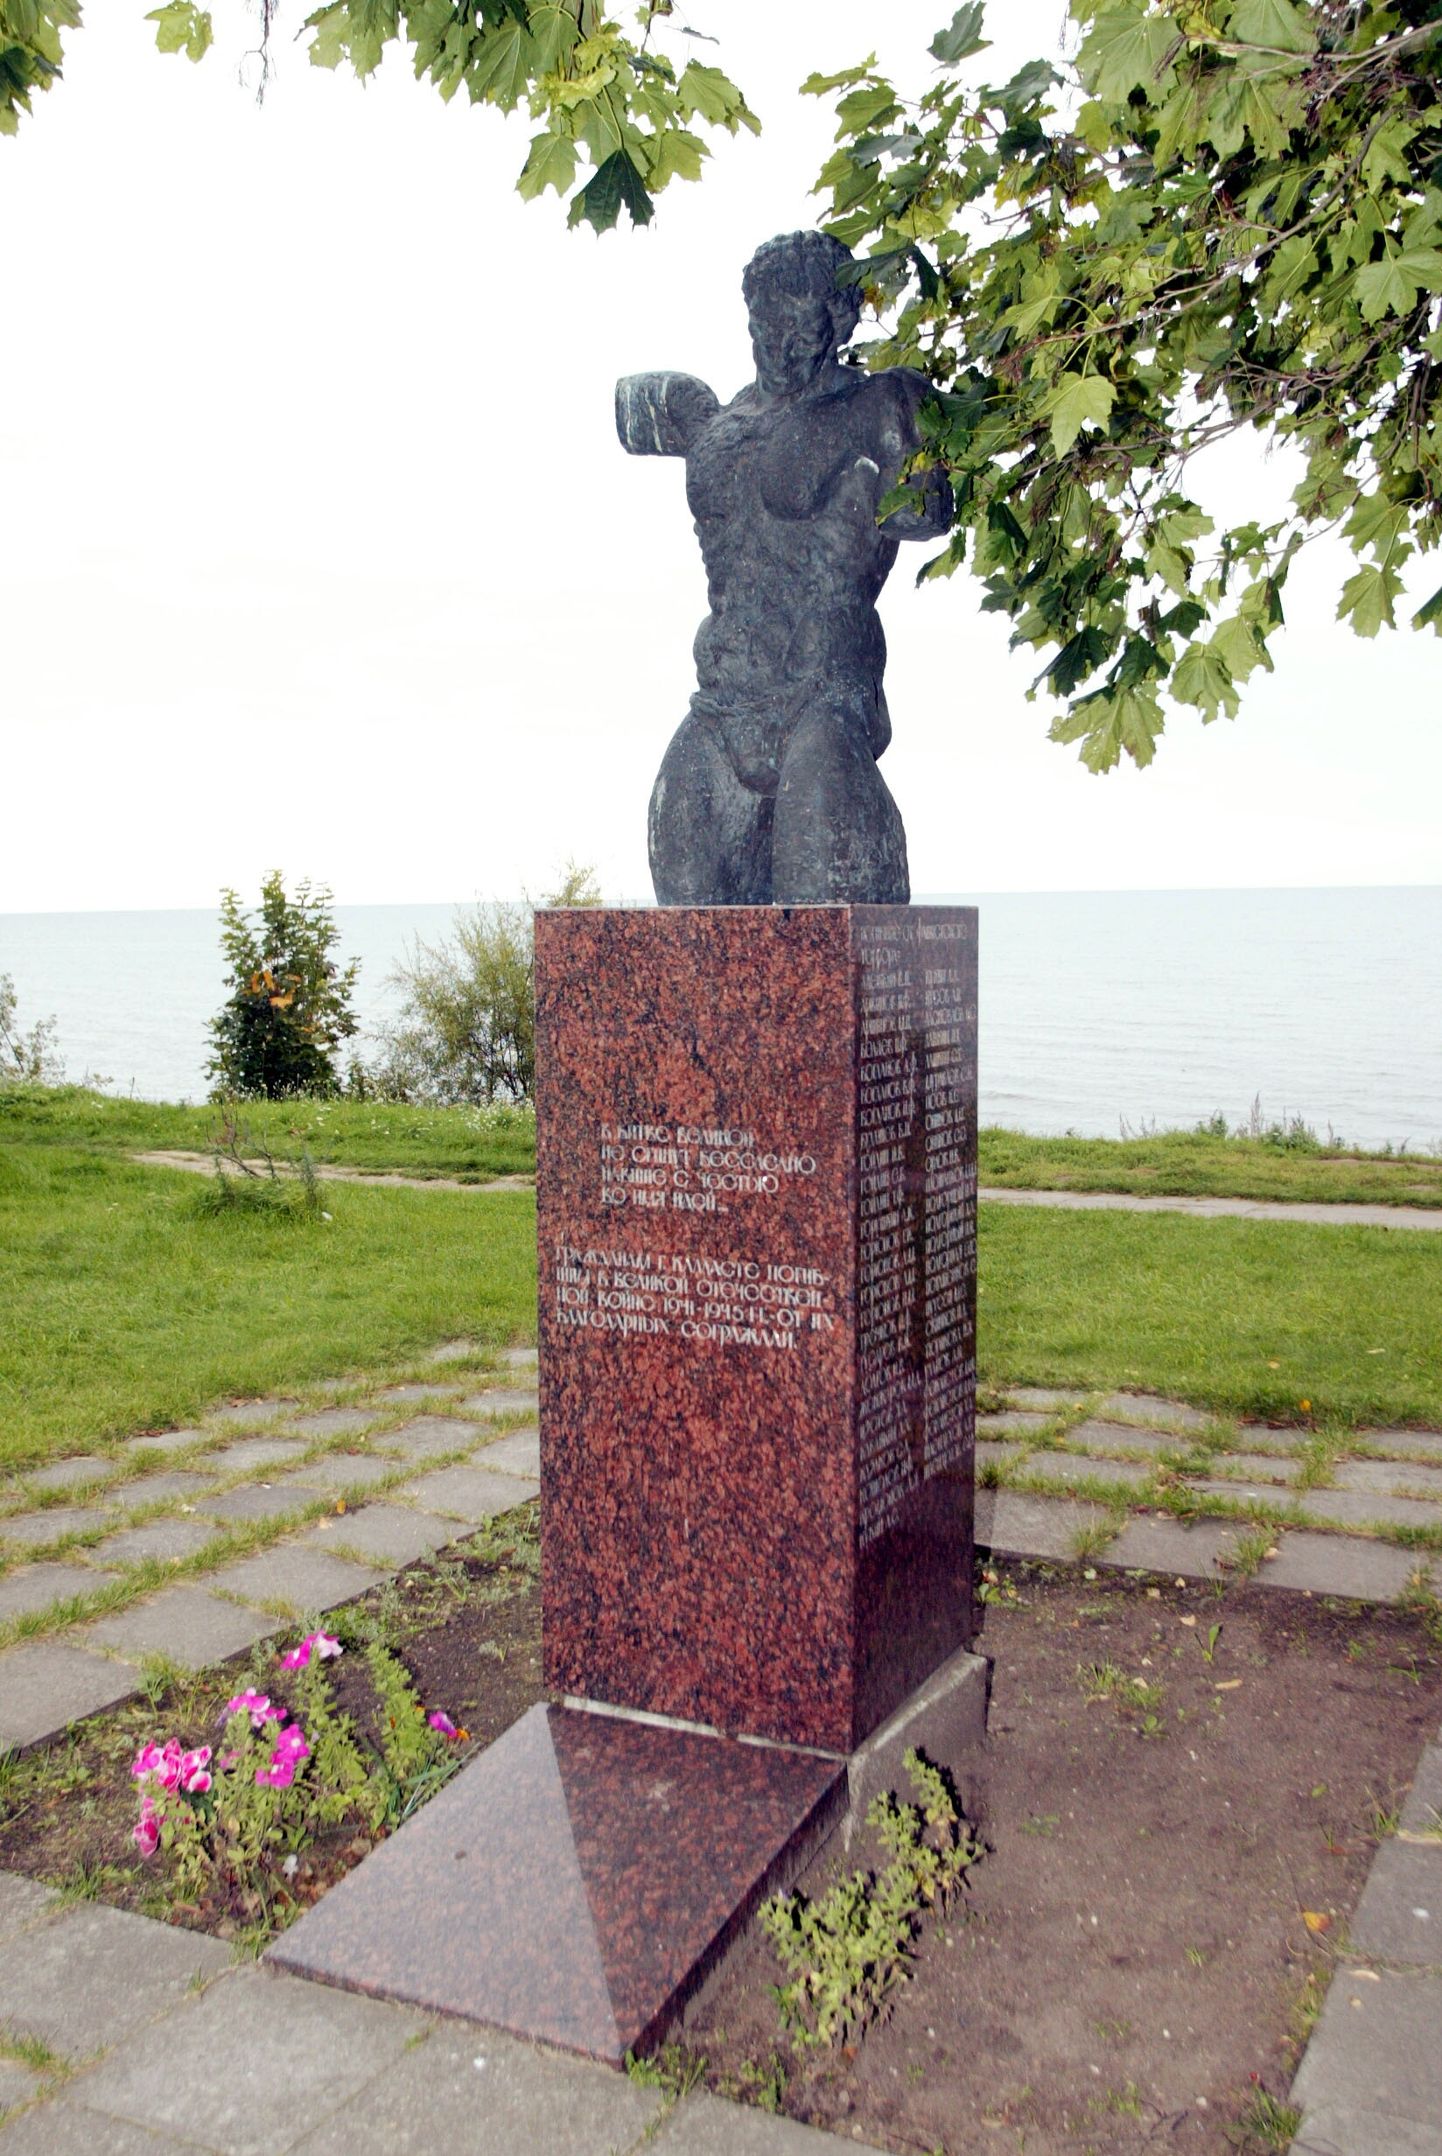 Peipsiääre vallavolikogu andis nõusoleku Ülo Õuna loodud mälestusmärgi eemaldamiseks.